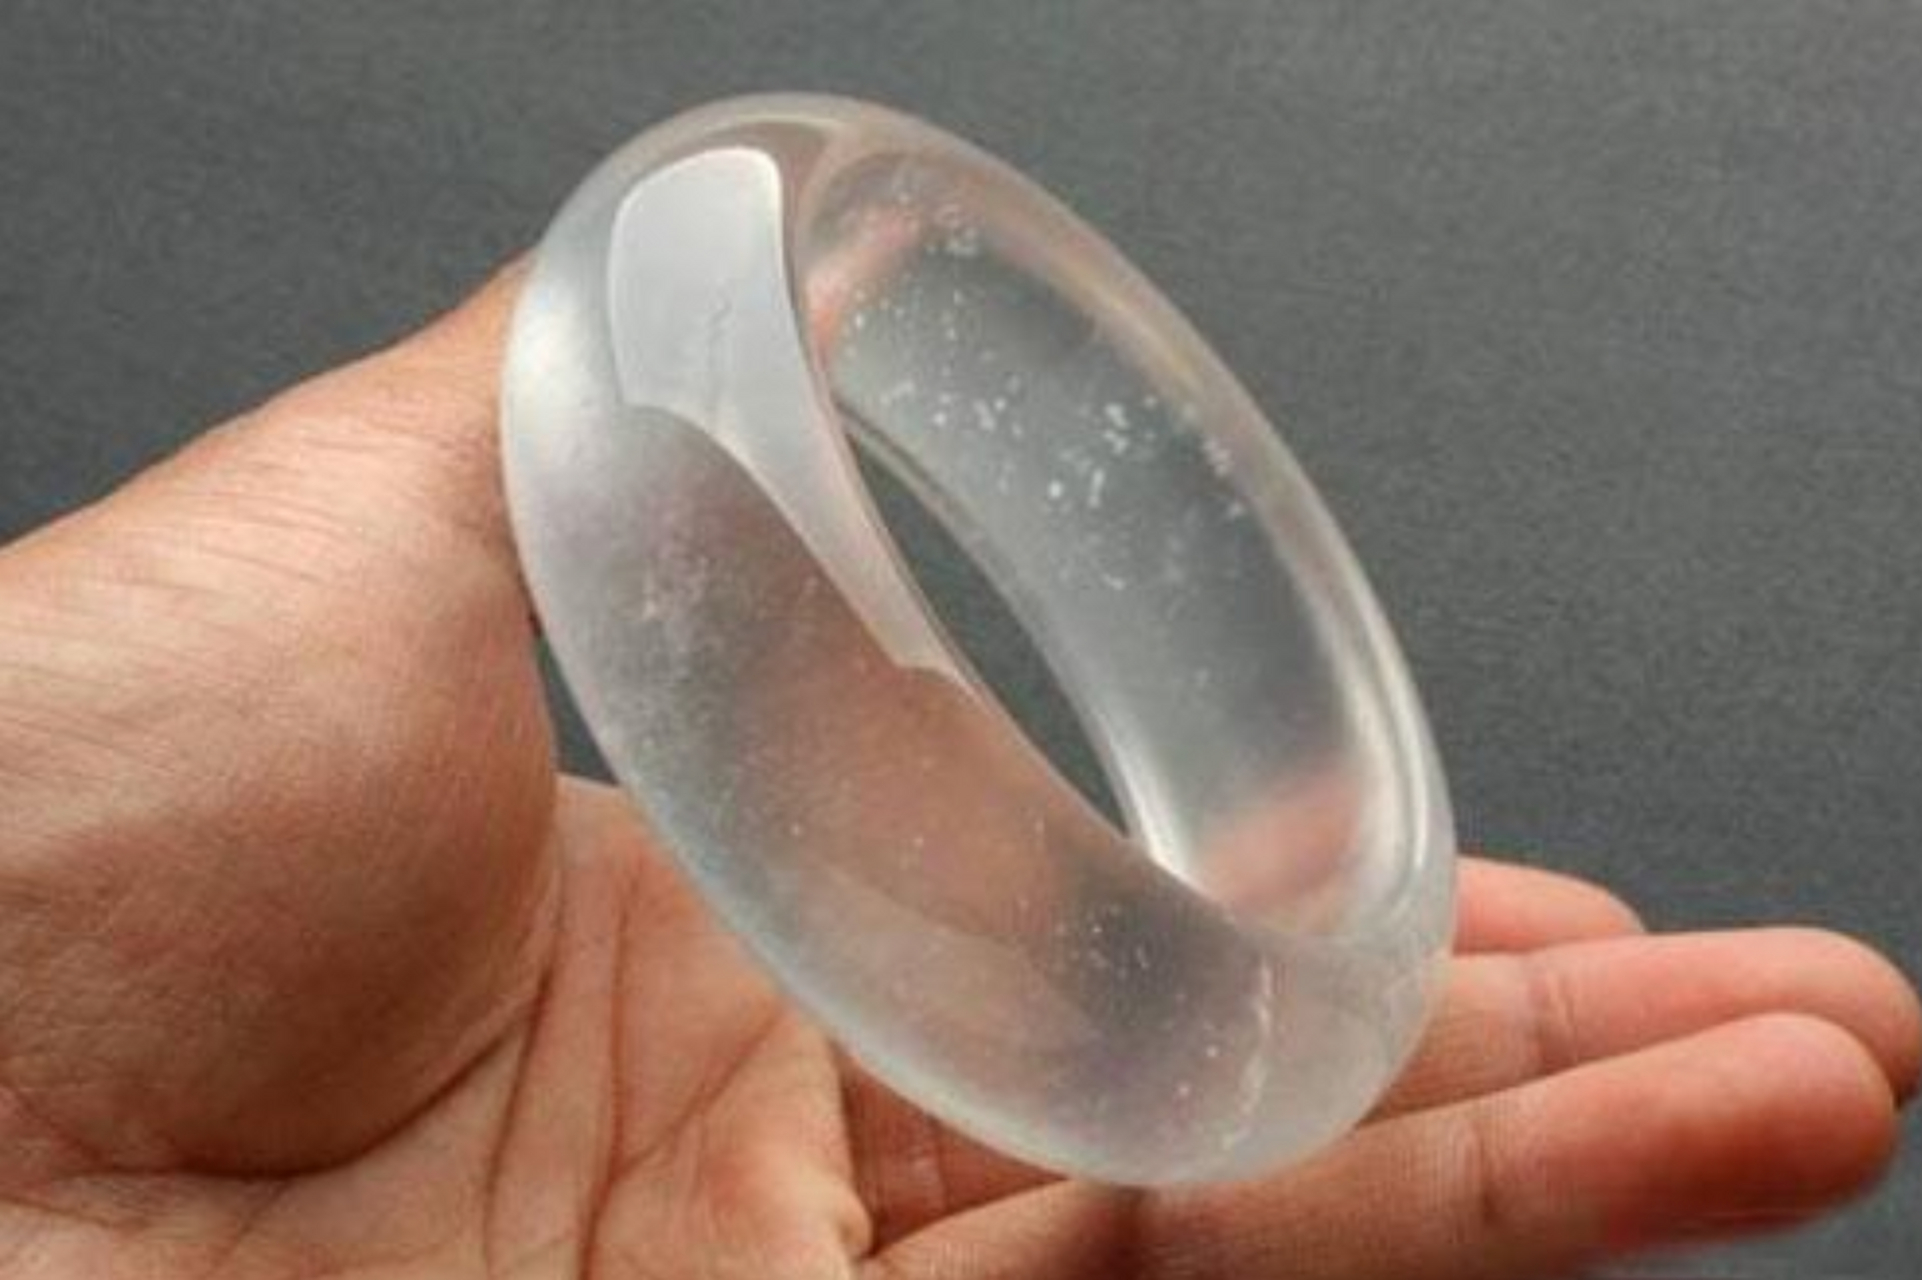 动态创作者扶持计划 冰种翡翠的晶体颗粒略微比玻璃种翡翠的粗一些